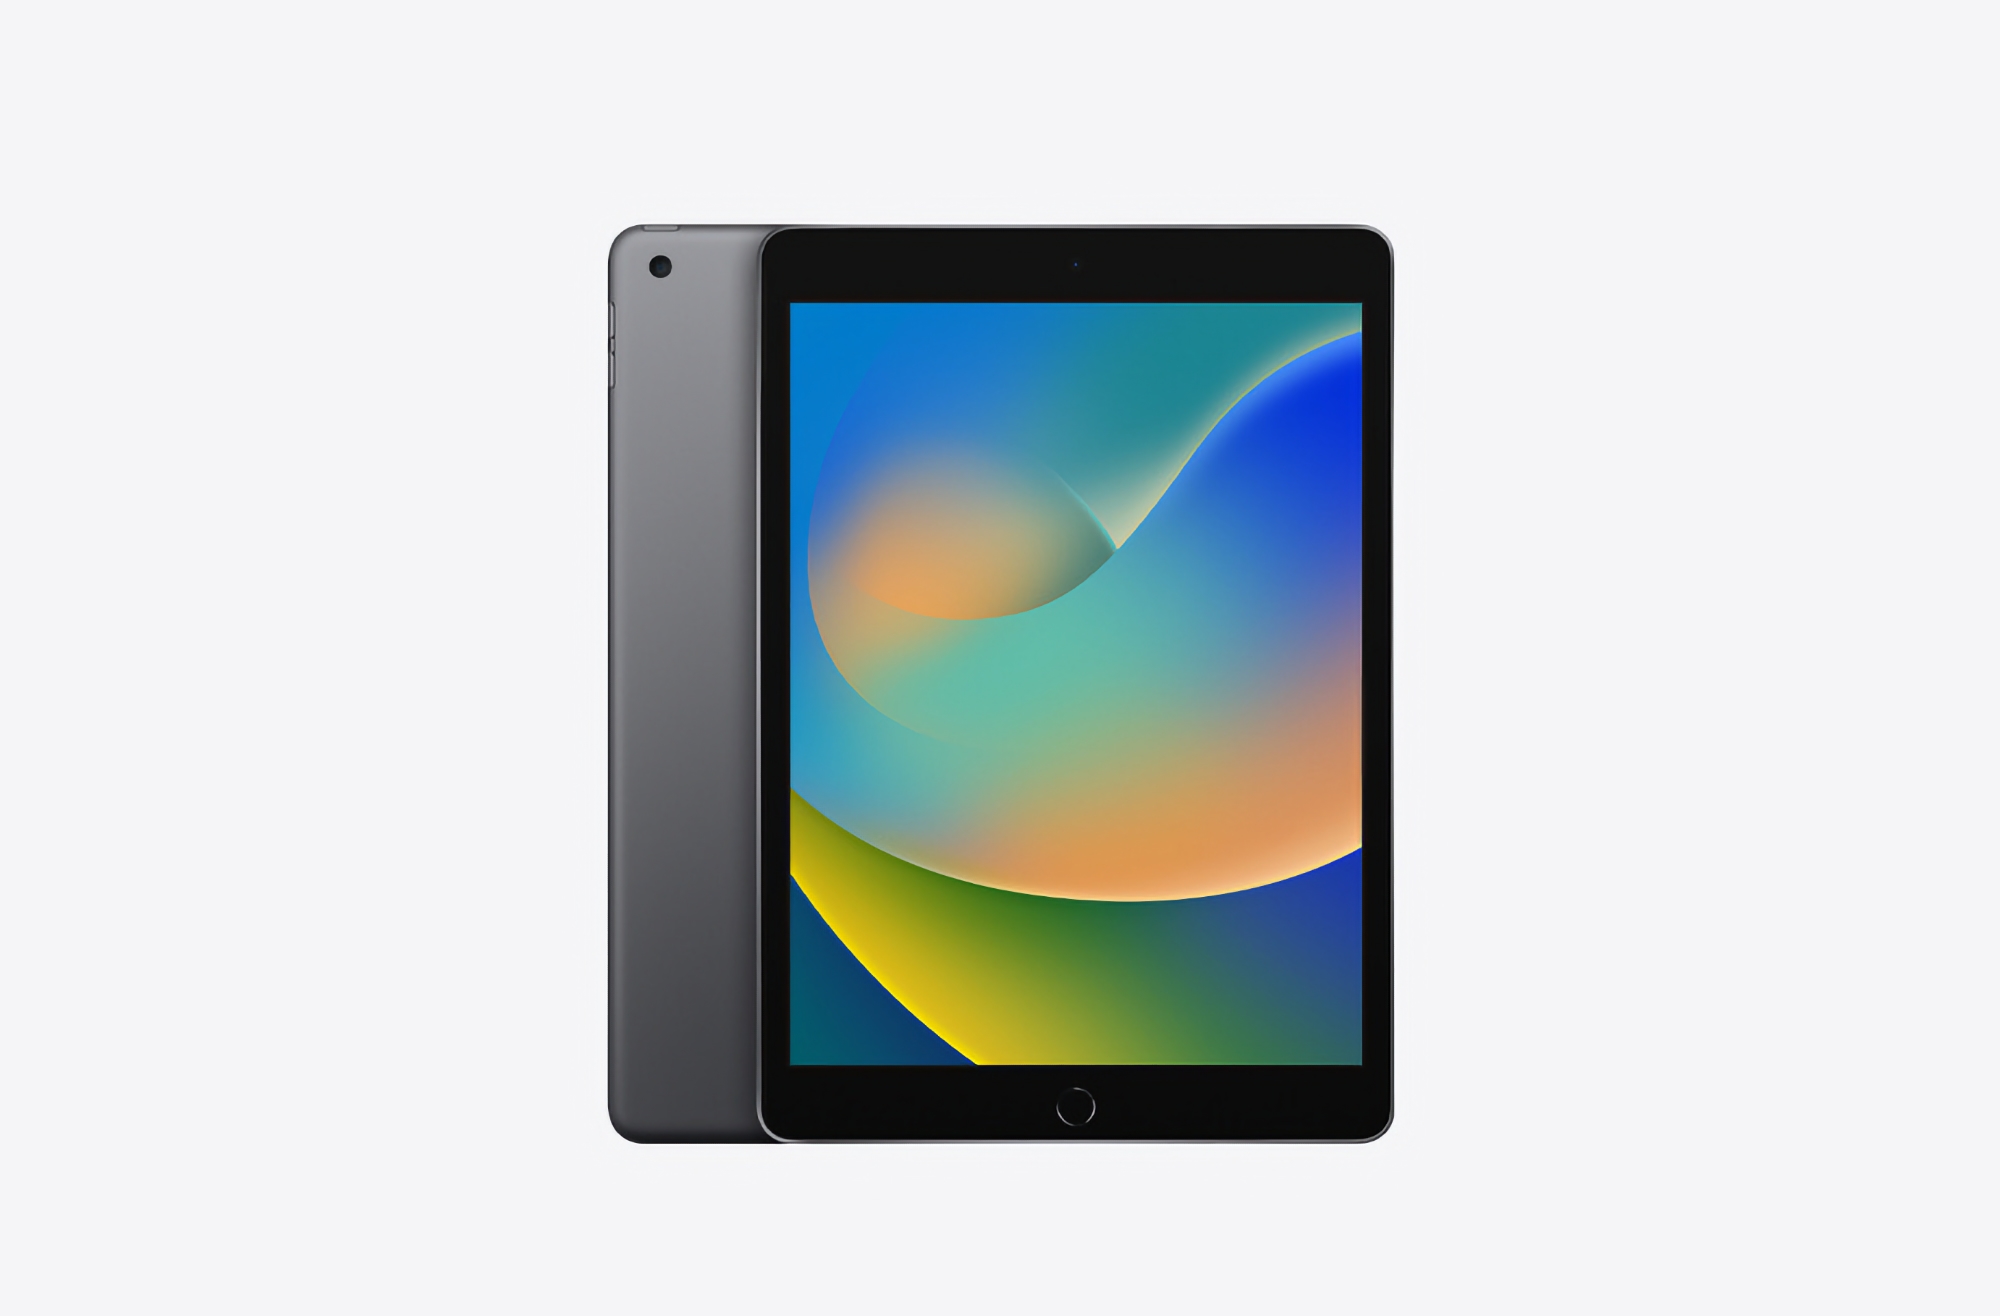 iPad (2021) con display Retina, chip A13 Bionic e Touch ID in vendita su Amazon con uno sconto fino a 80 dollari